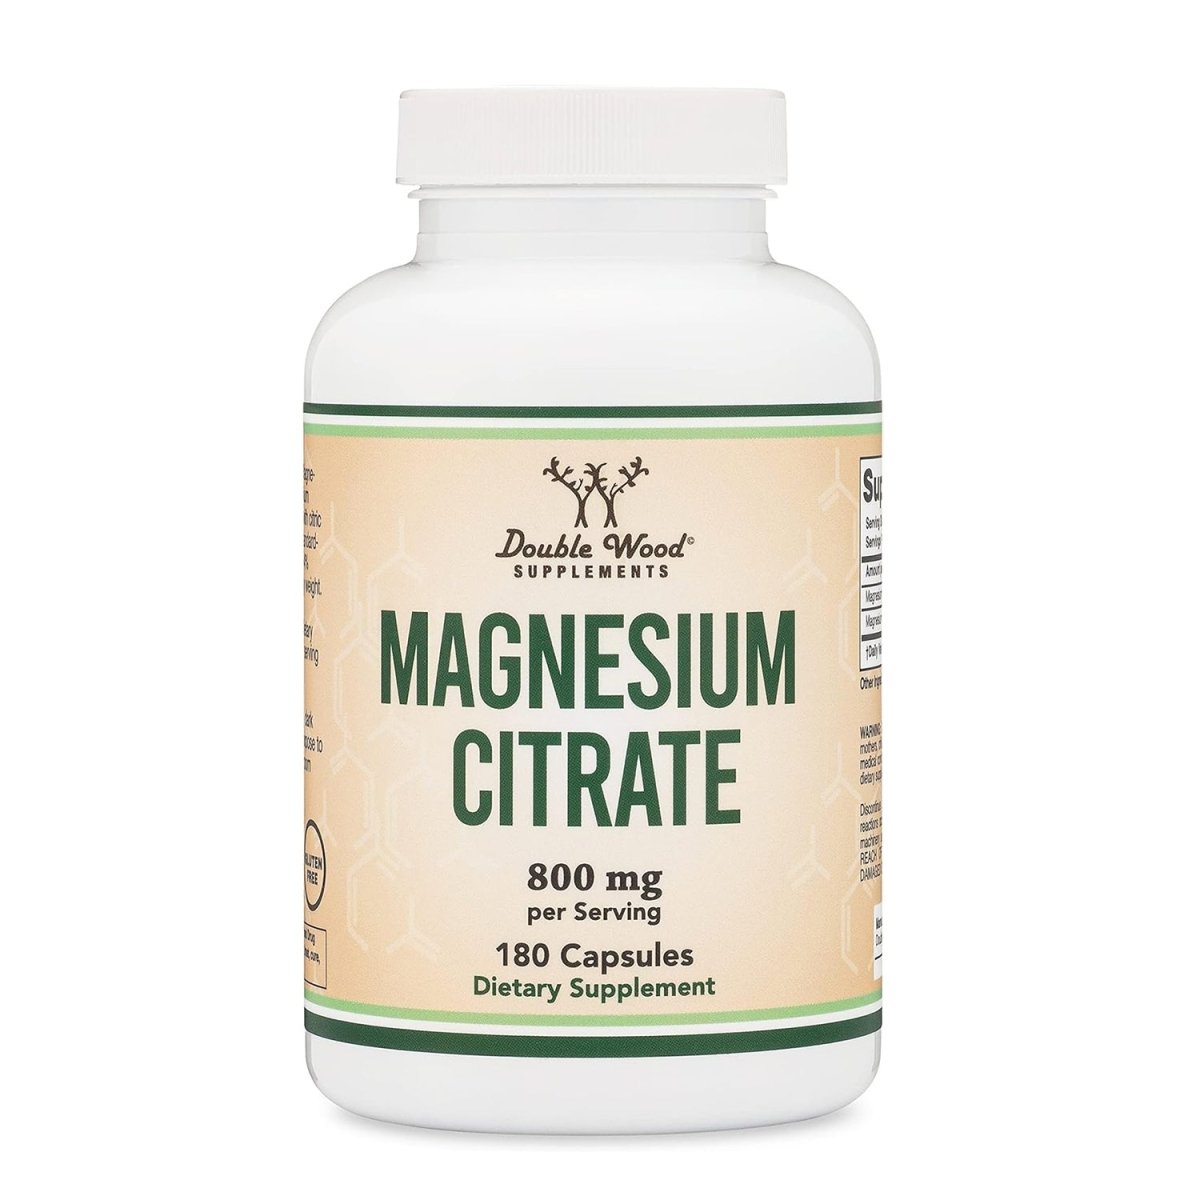 Magnesium Citrate Supplement